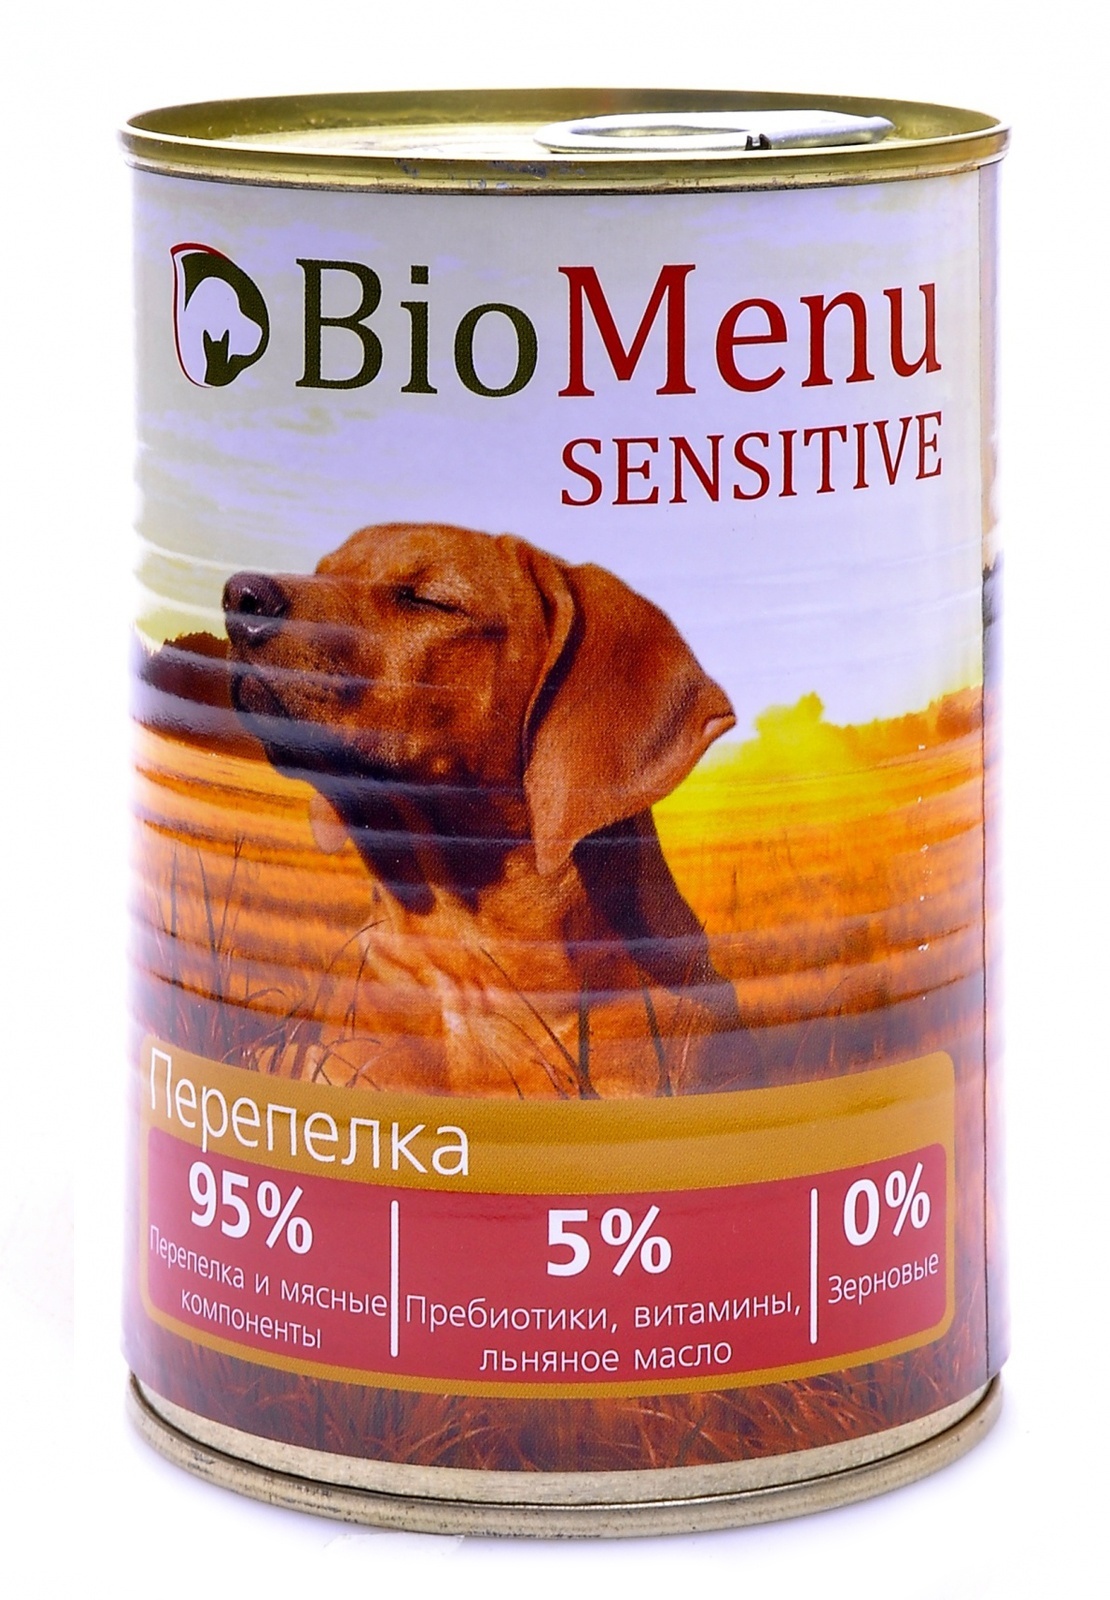 BioMenu BioMenu гипоаллергенные консервы для собак перепелка (410 г) biomenu biomenu консервы для собак мясное ассорти 100 г